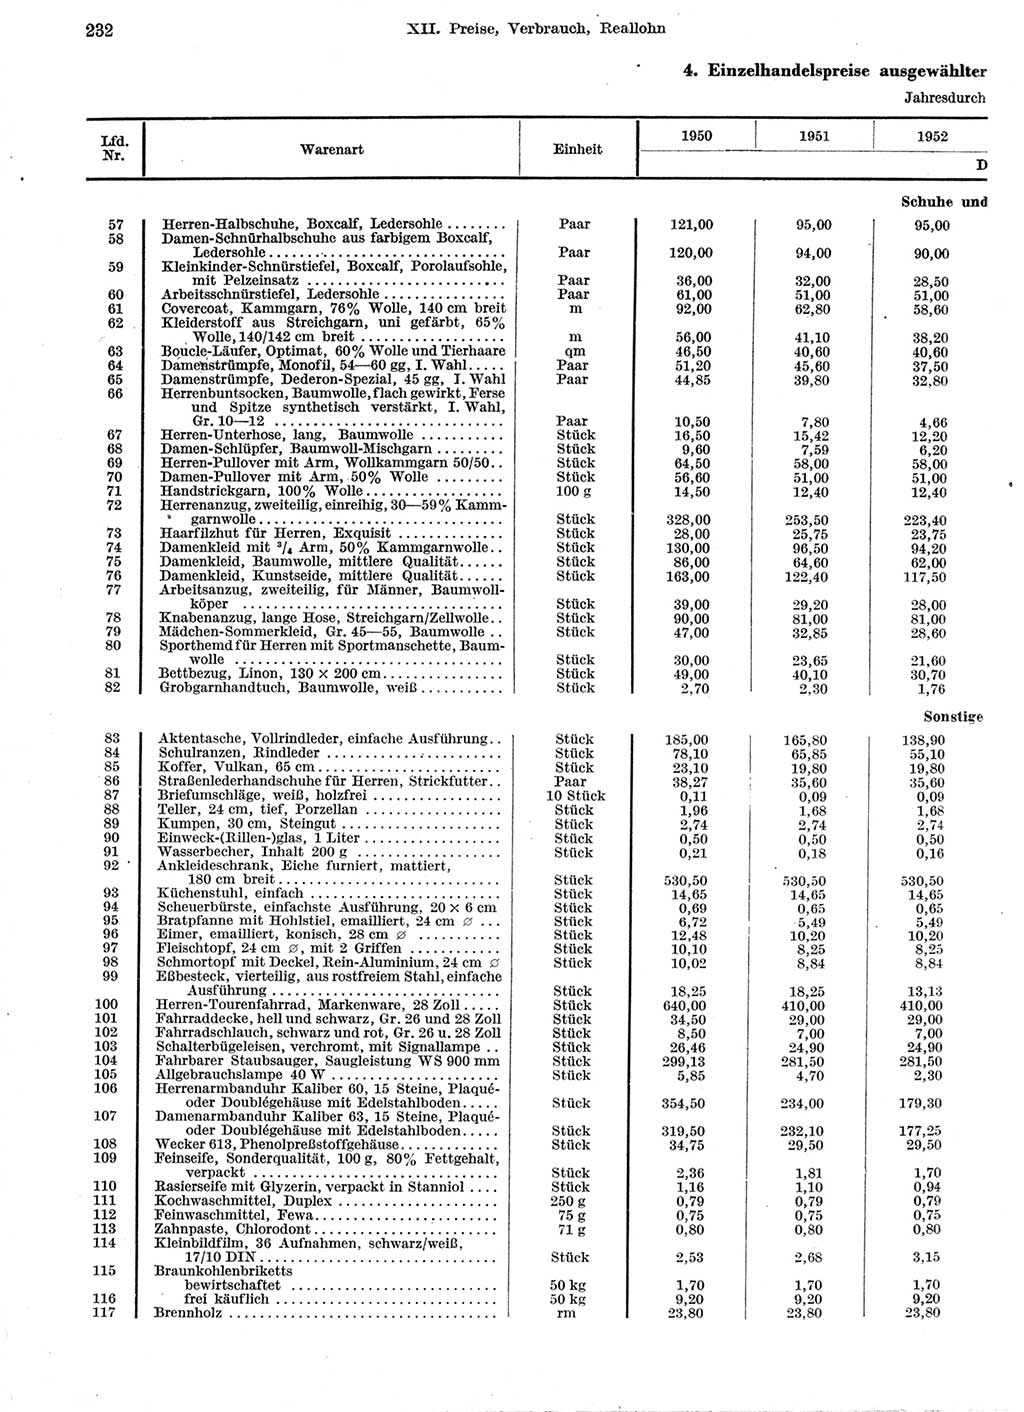 Statistisches Jahrbuch der Deutschen Demokratischen Republik (DDR) 1959, Seite 232 (Stat. Jb. DDR 1959, S. 232)